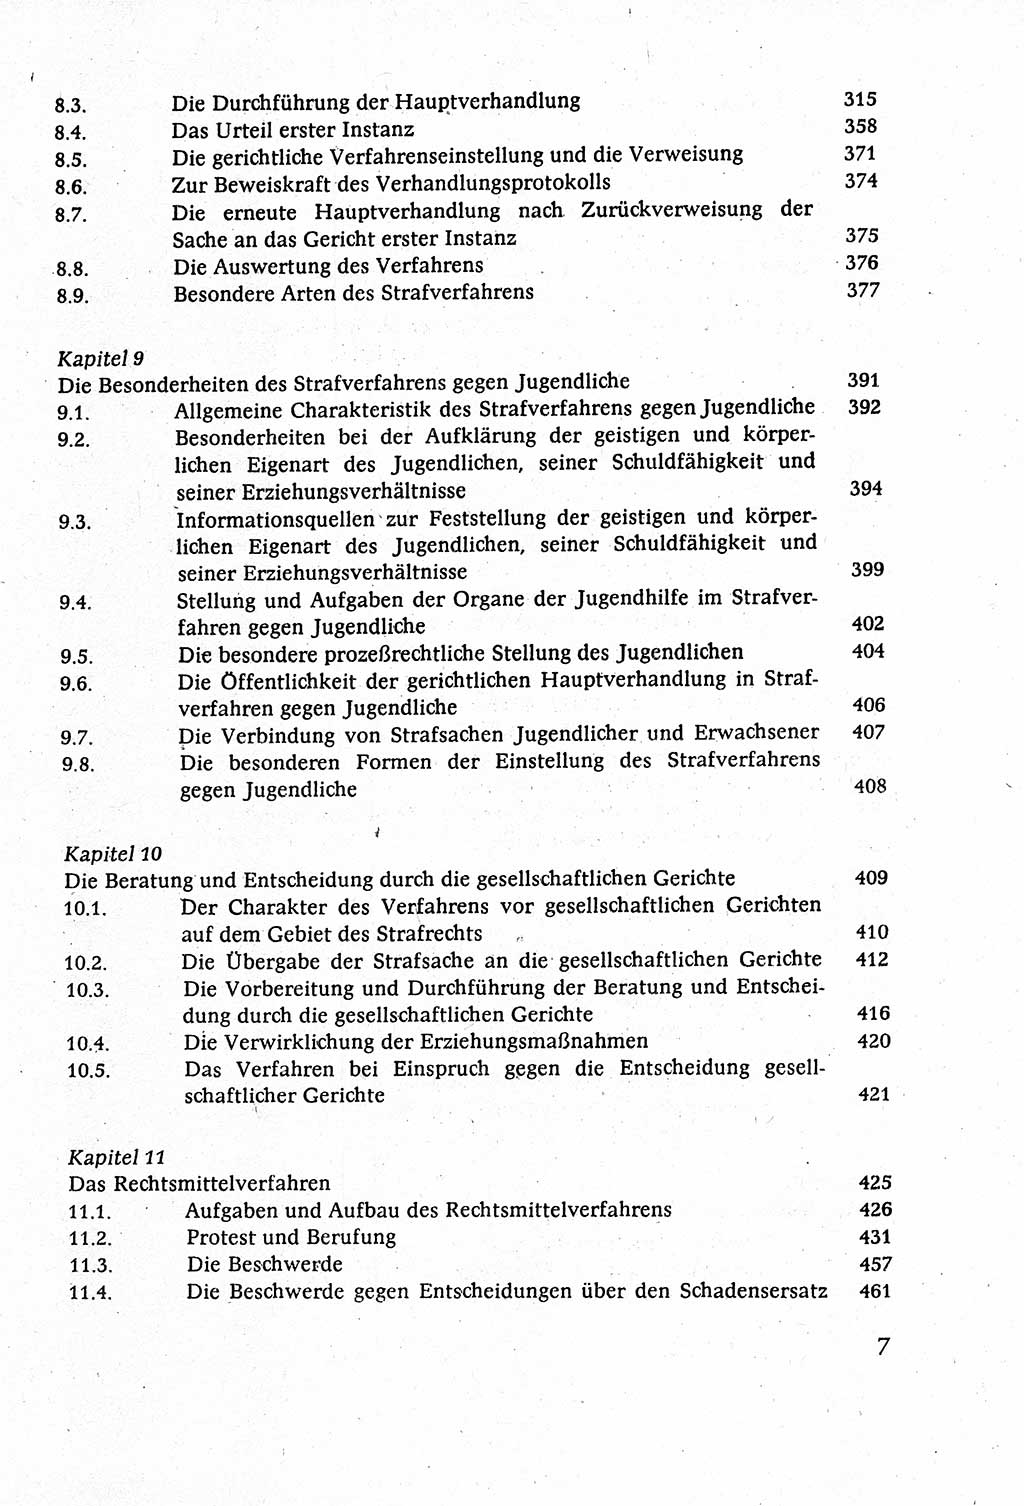 Strafverfahrensrecht [Deutsche Demokratische Republik (DDR)], Lehrbuch 1977, Seite 7 (Strafverf.-R. DDR Lb. 1977, S. 7)